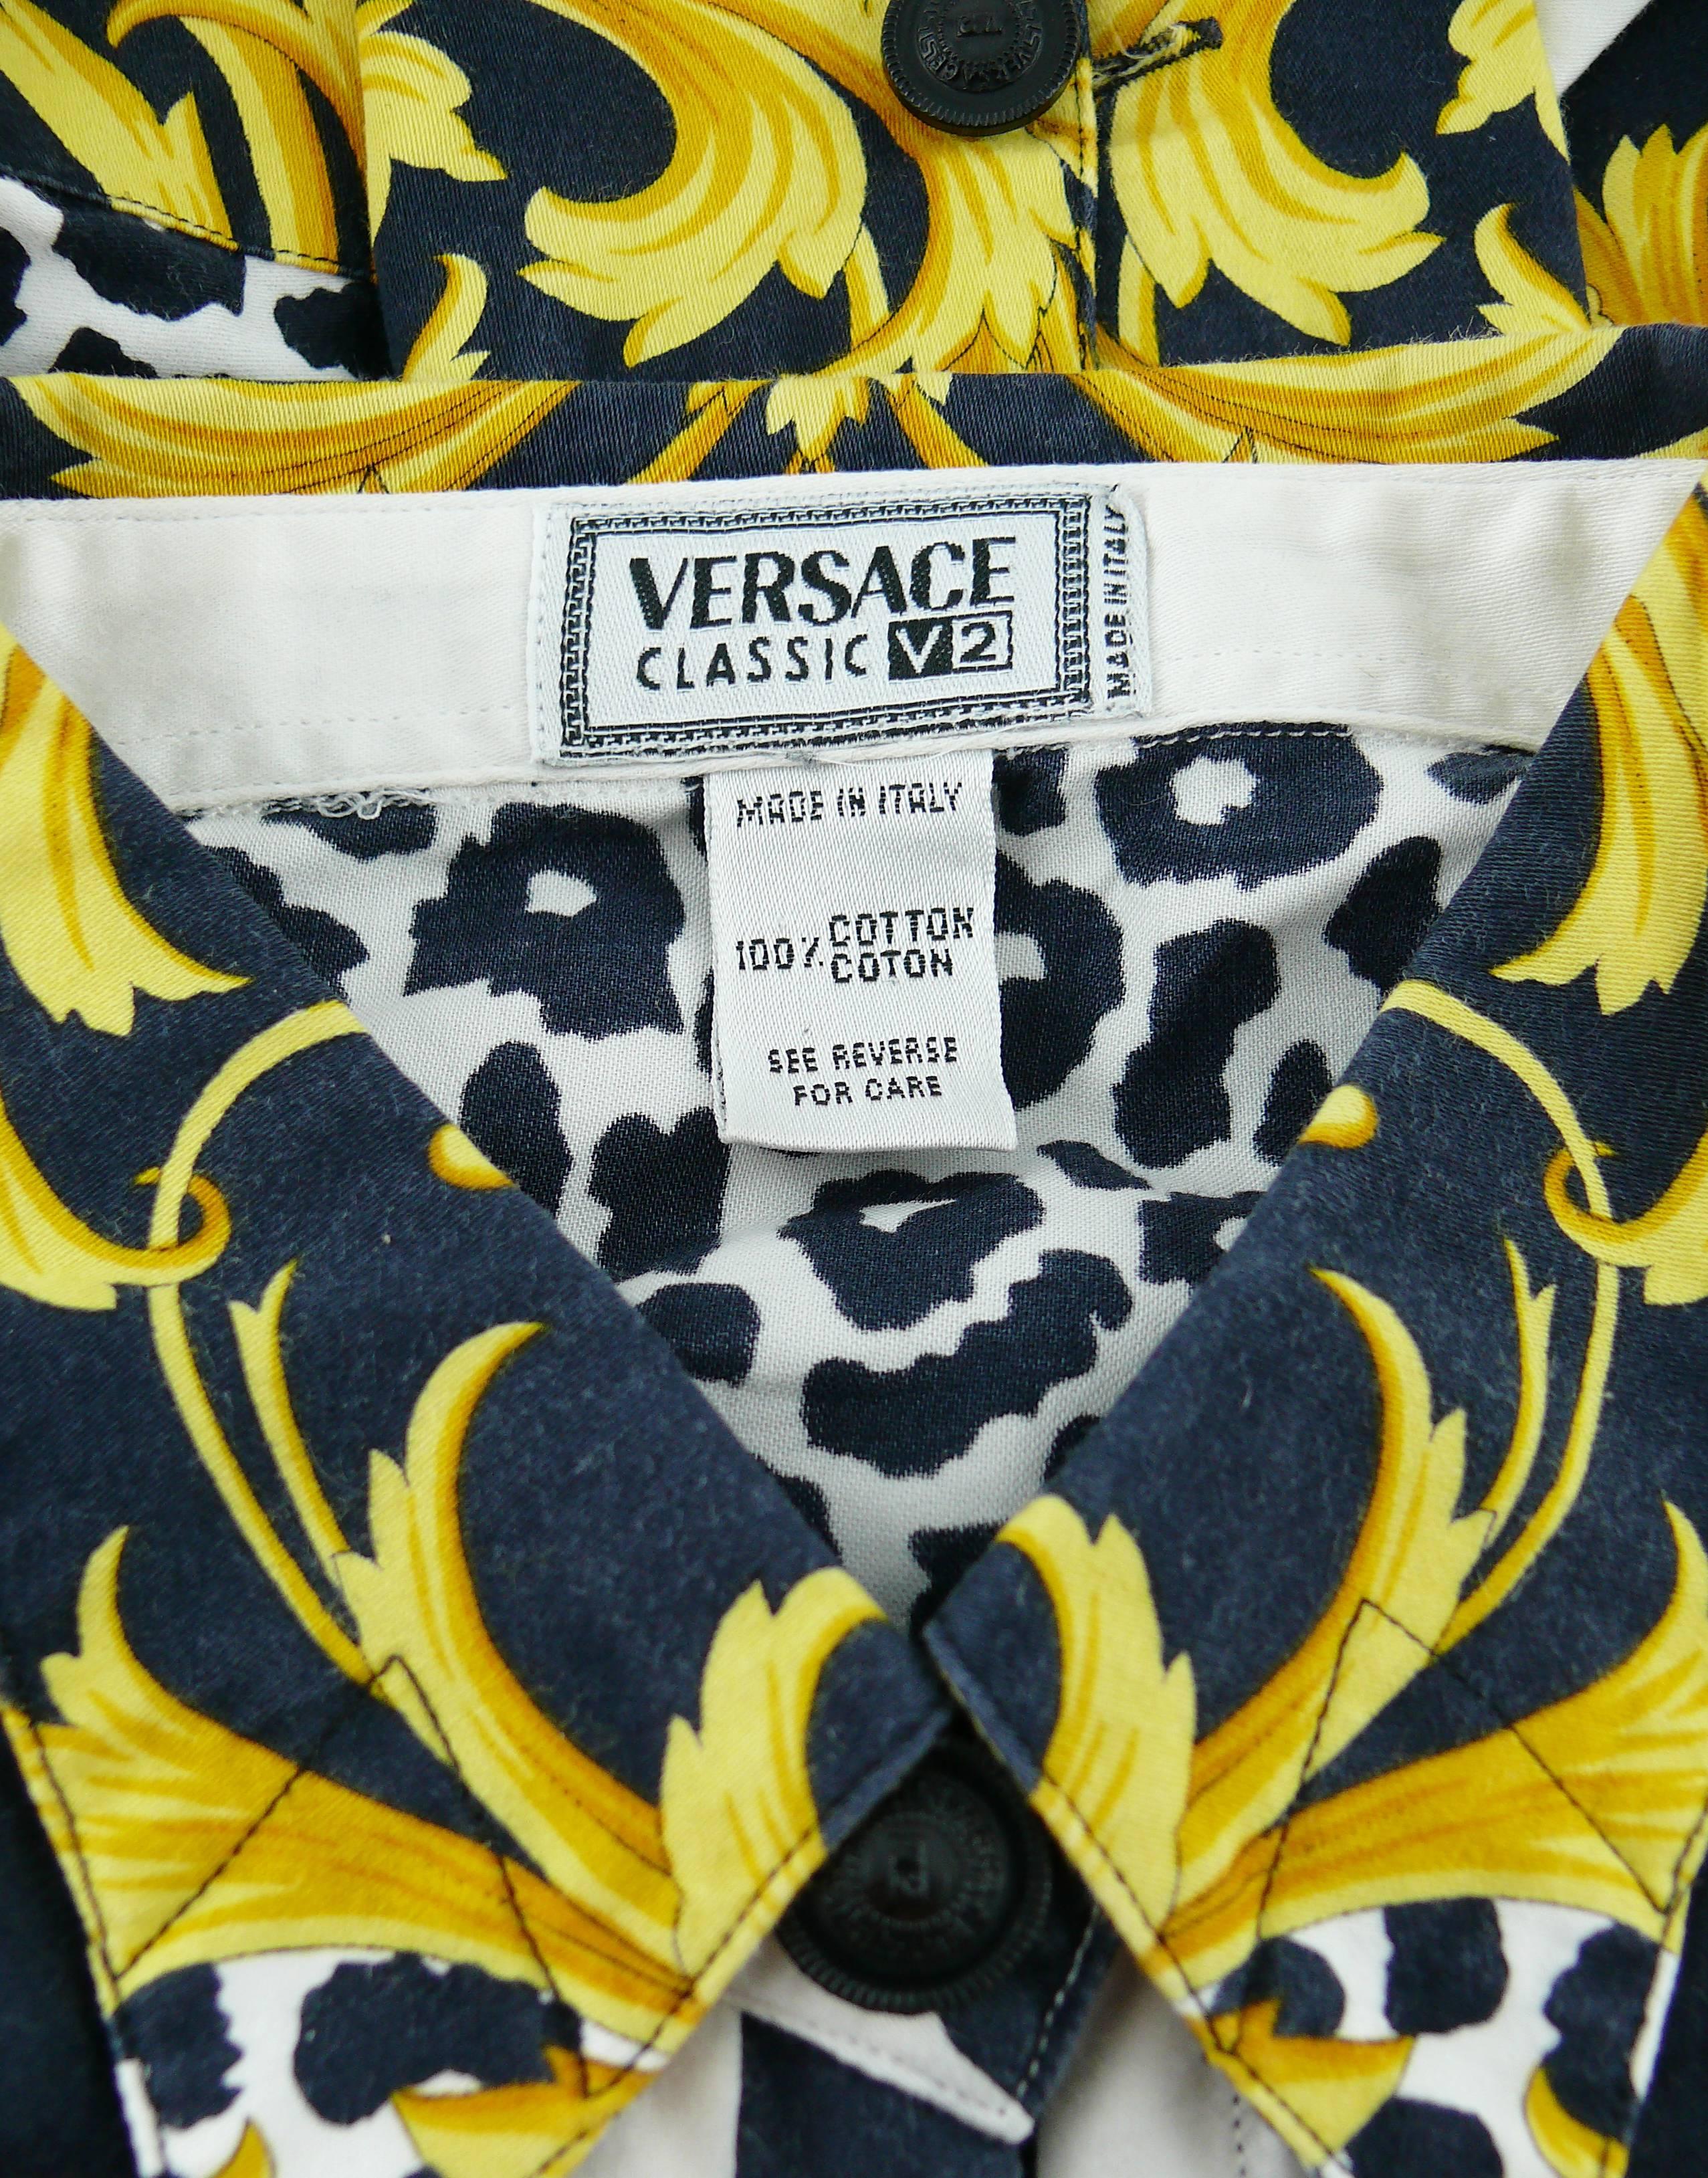 Versace Classic V2 Vintage Baroque Leopard Print Cotton Shirt Unisex Size 42 For Sale 3